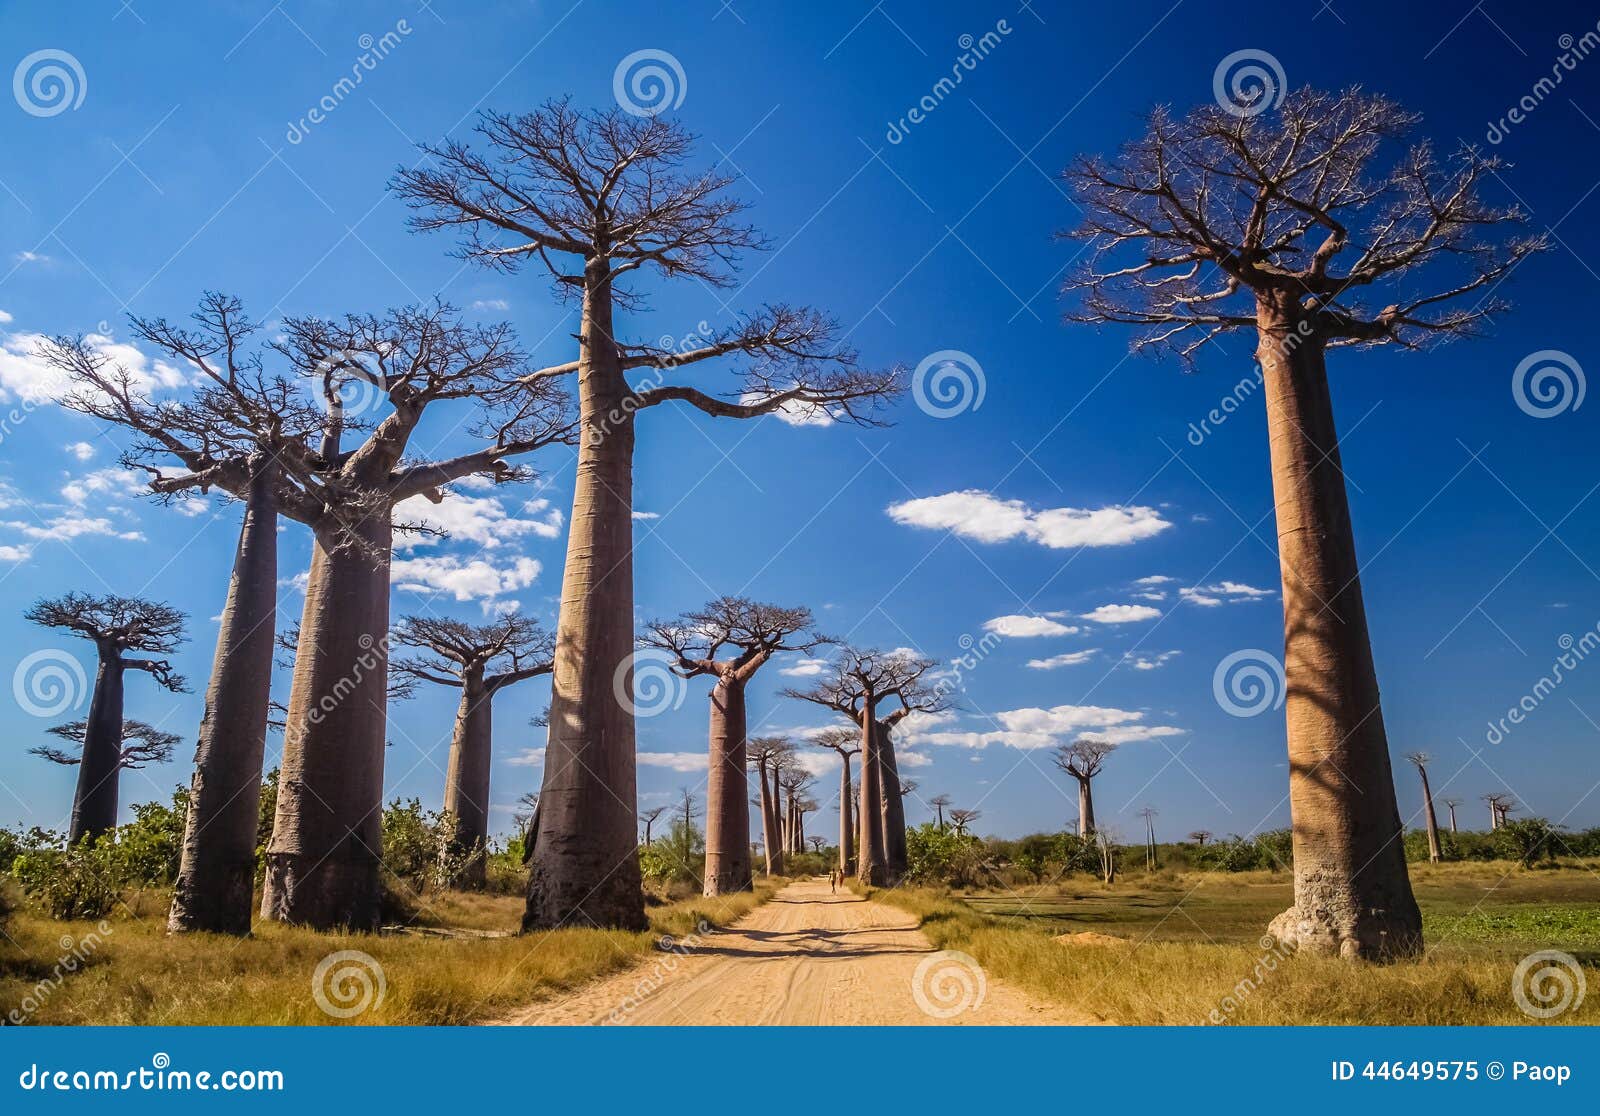 avenida de baobab